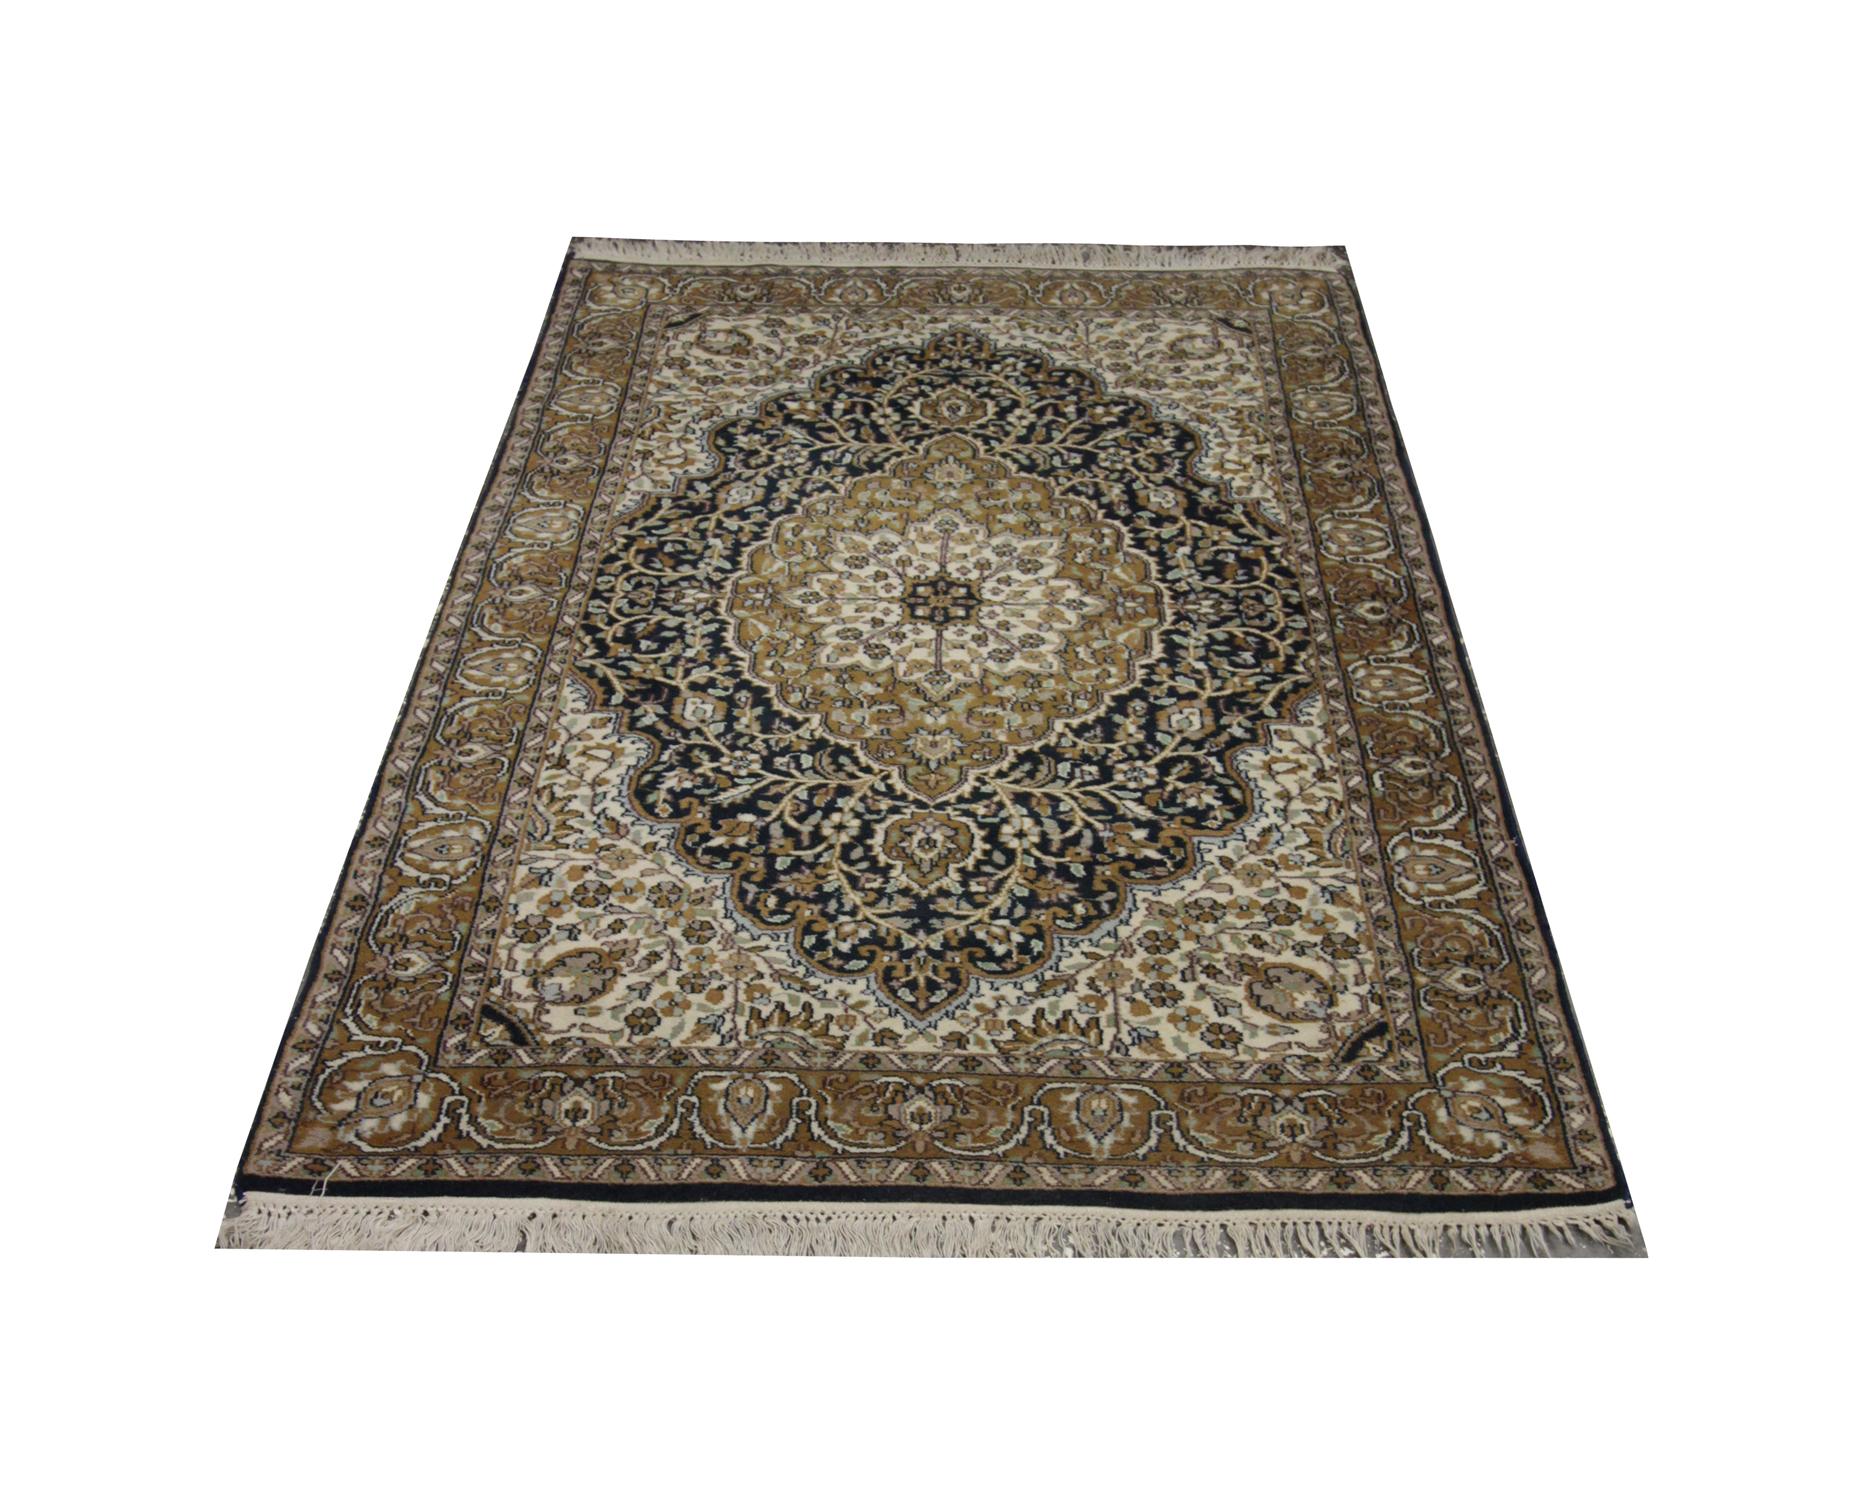 Verschönern Sie Ihre Böden mit diesem alten indischen Teppich, der 1970 aus handgesponnener, pflanzlich gefärbter Wolle und Baumwolle handgeknüpft und von einigen der besten Teppichhandwerker gewebt wurde. Dieser Teppich eignet sich perfekt für